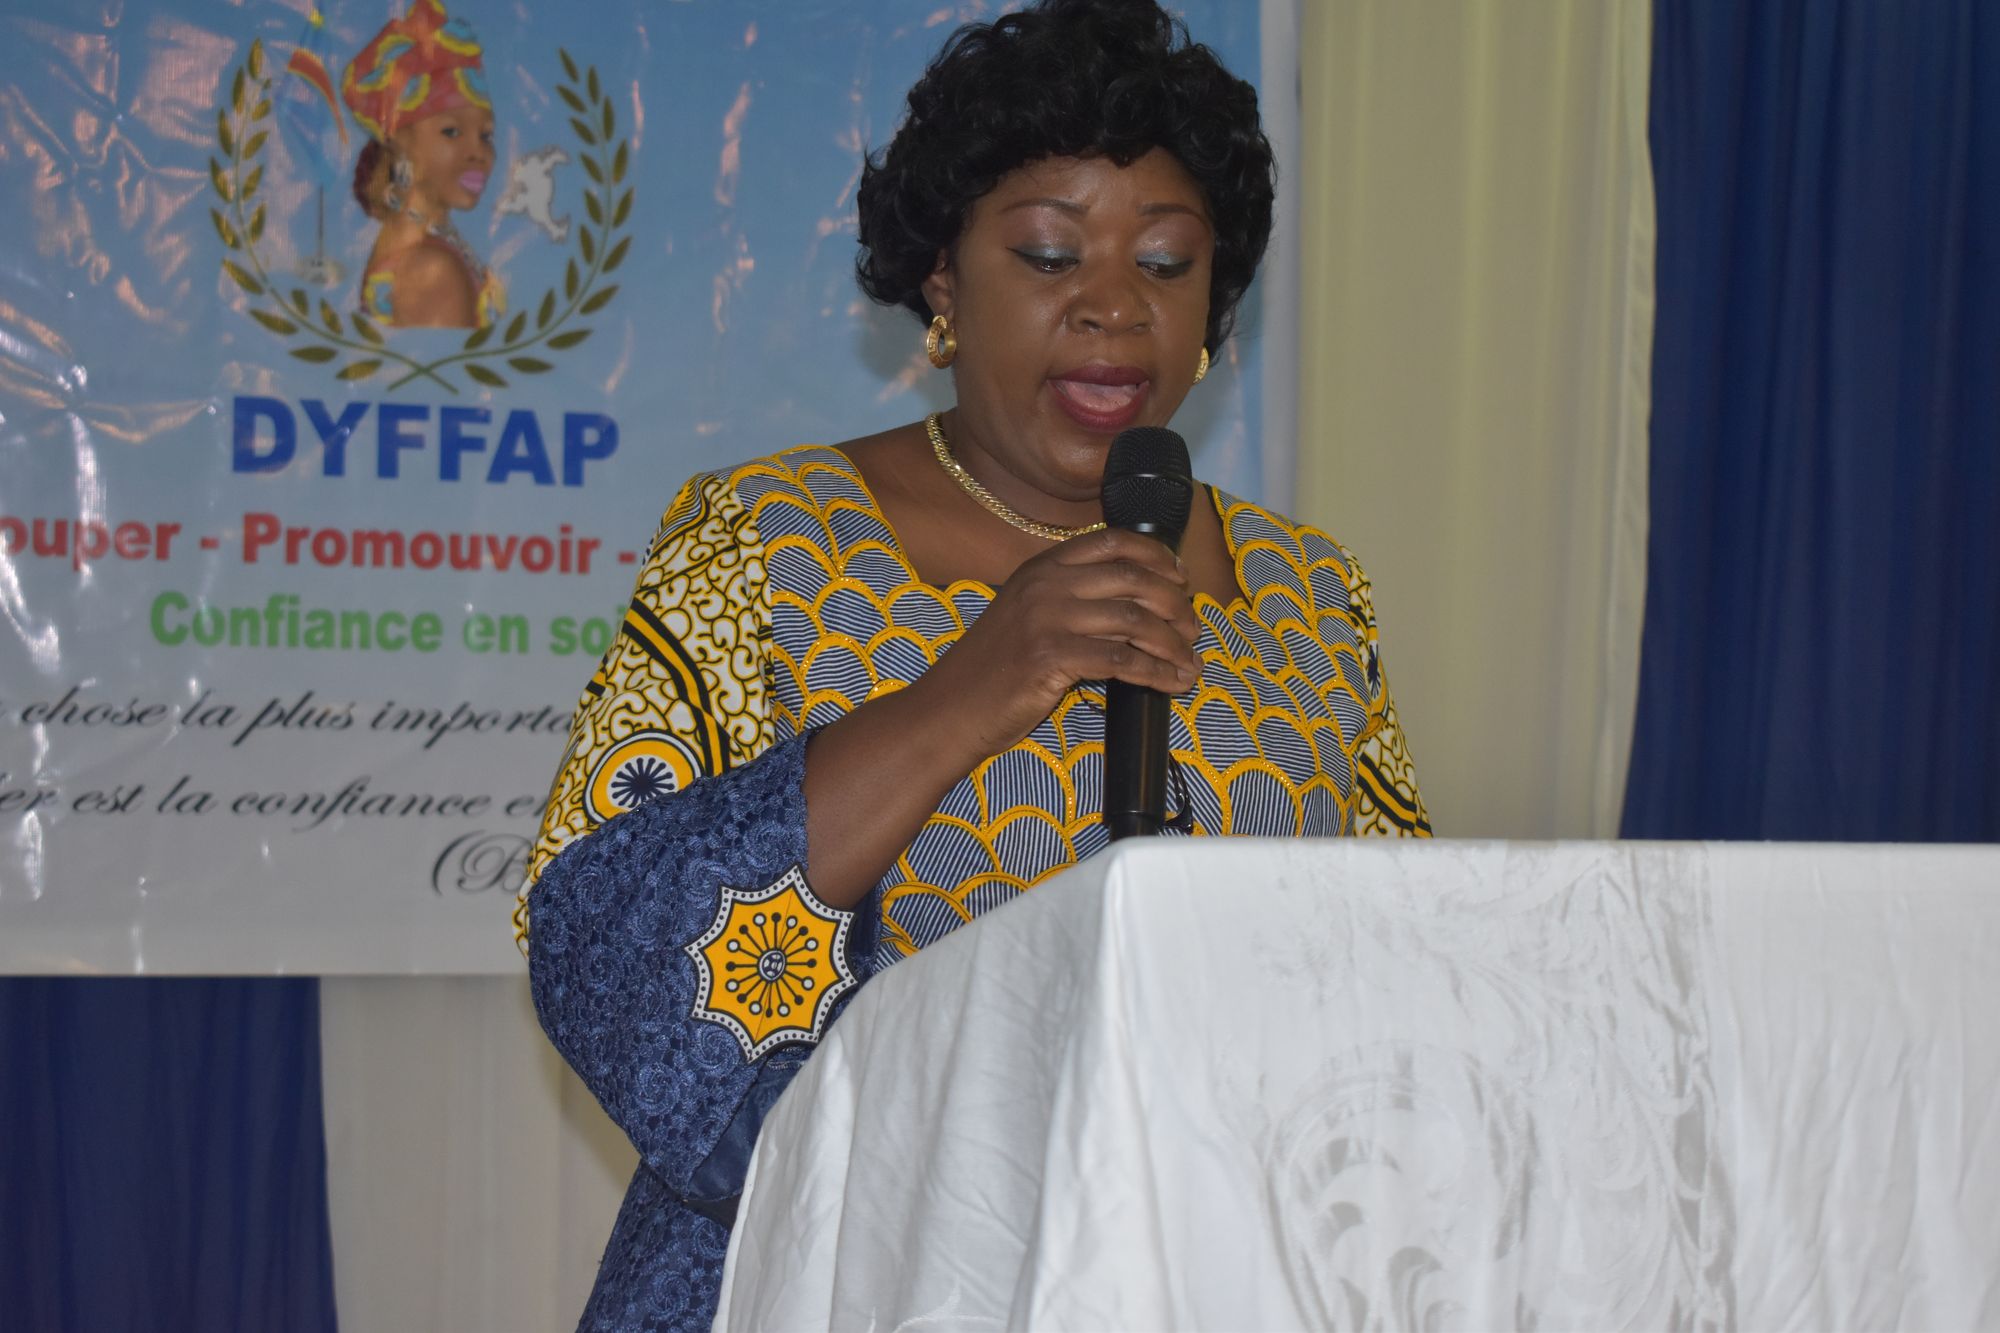 Dyffap/Haut-Katanga célèbre la Journée Internationale de la Femme